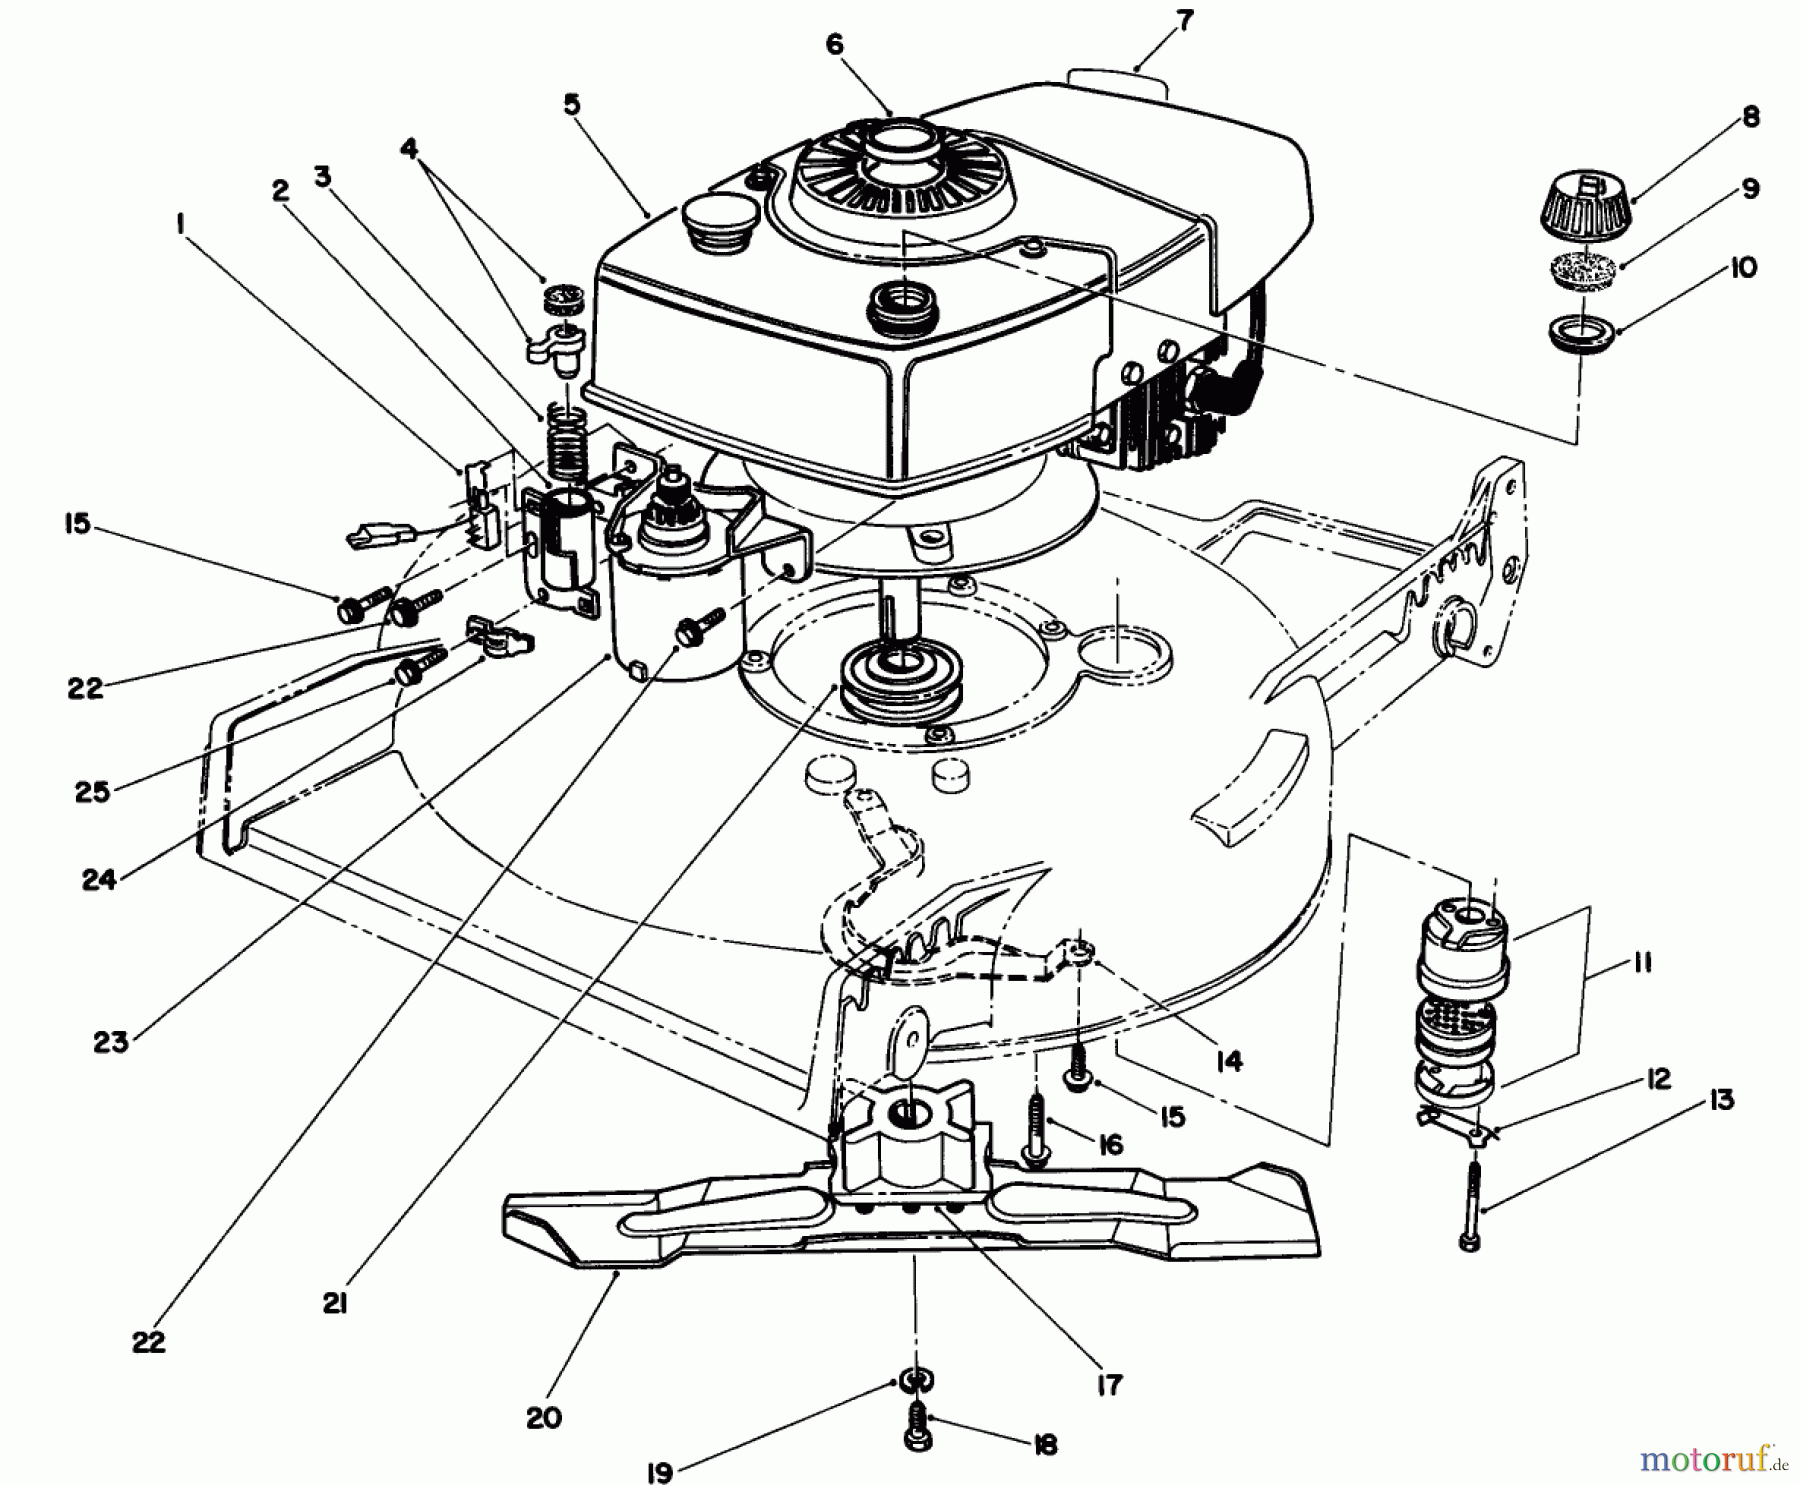  Toro Neu Mowers, Walk-Behind Seite 1 20671 - Toro Lawnmower, 1989 (9000001-9999999) ENGINE ASSEMBLY